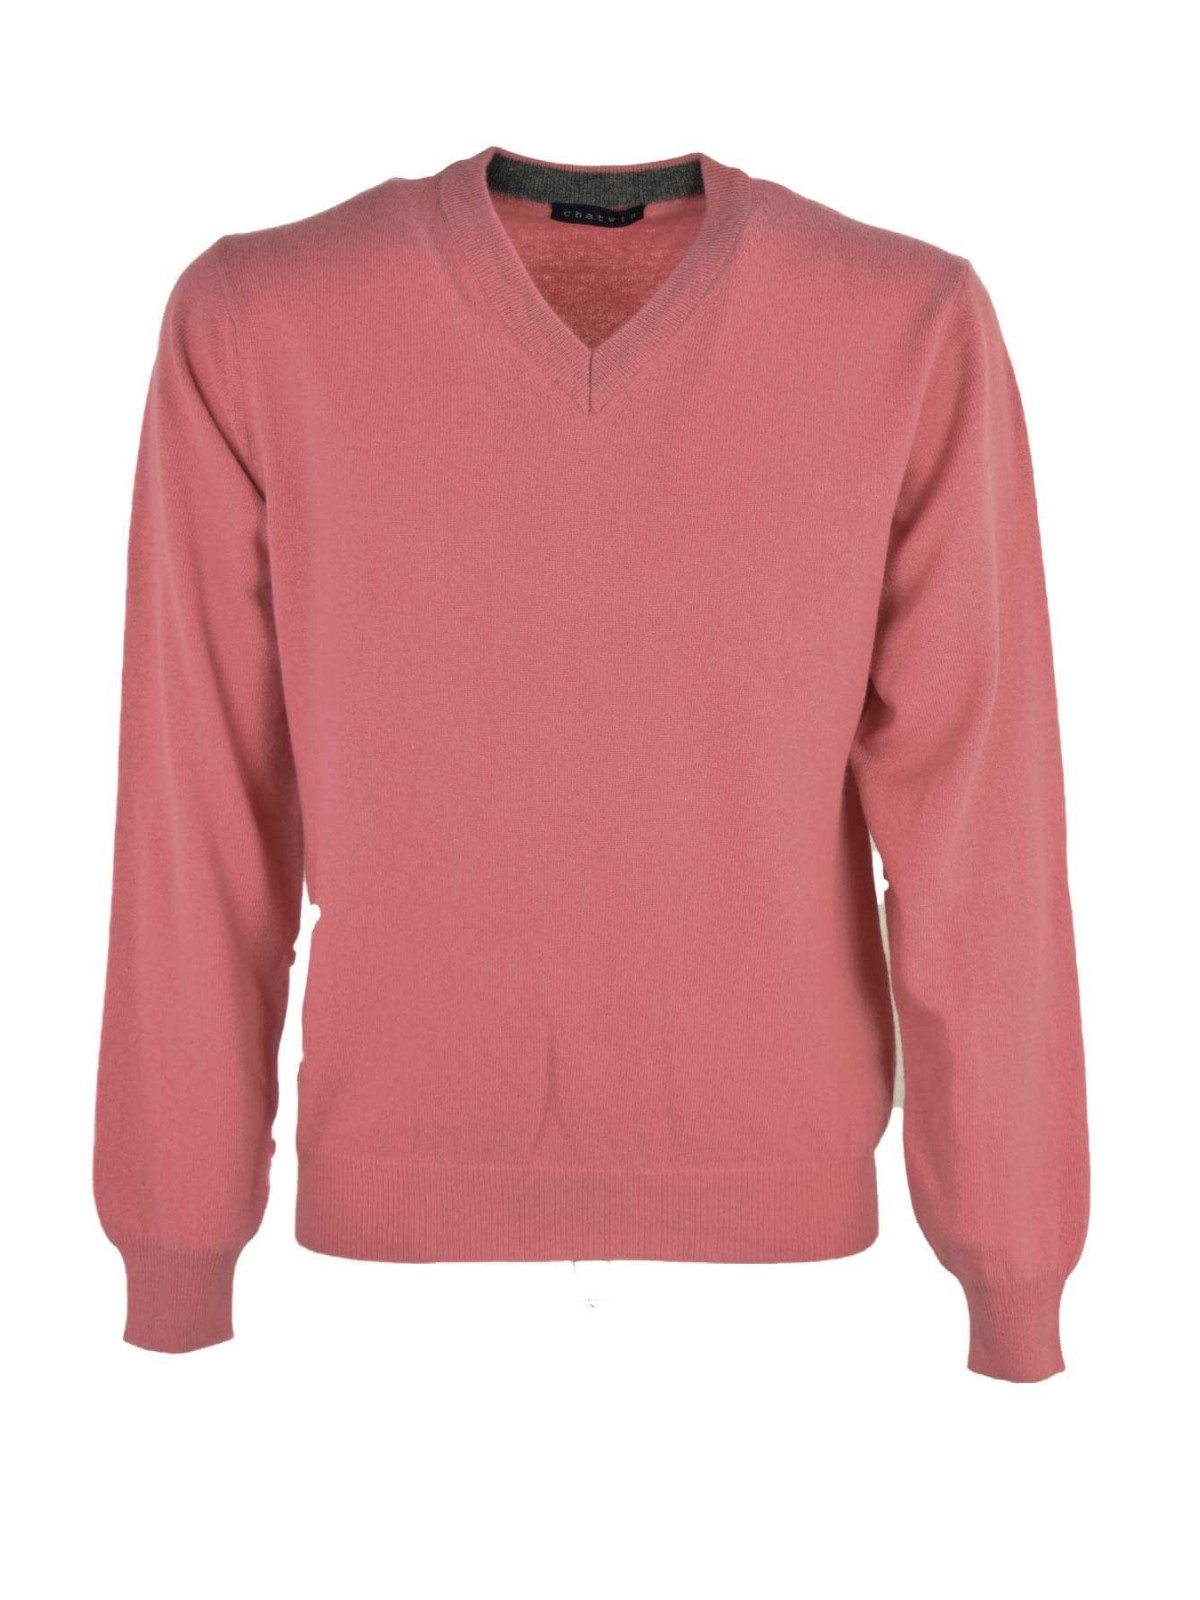 Pink Men's V-Neck Pullover - 2Fili Cashmere Blend